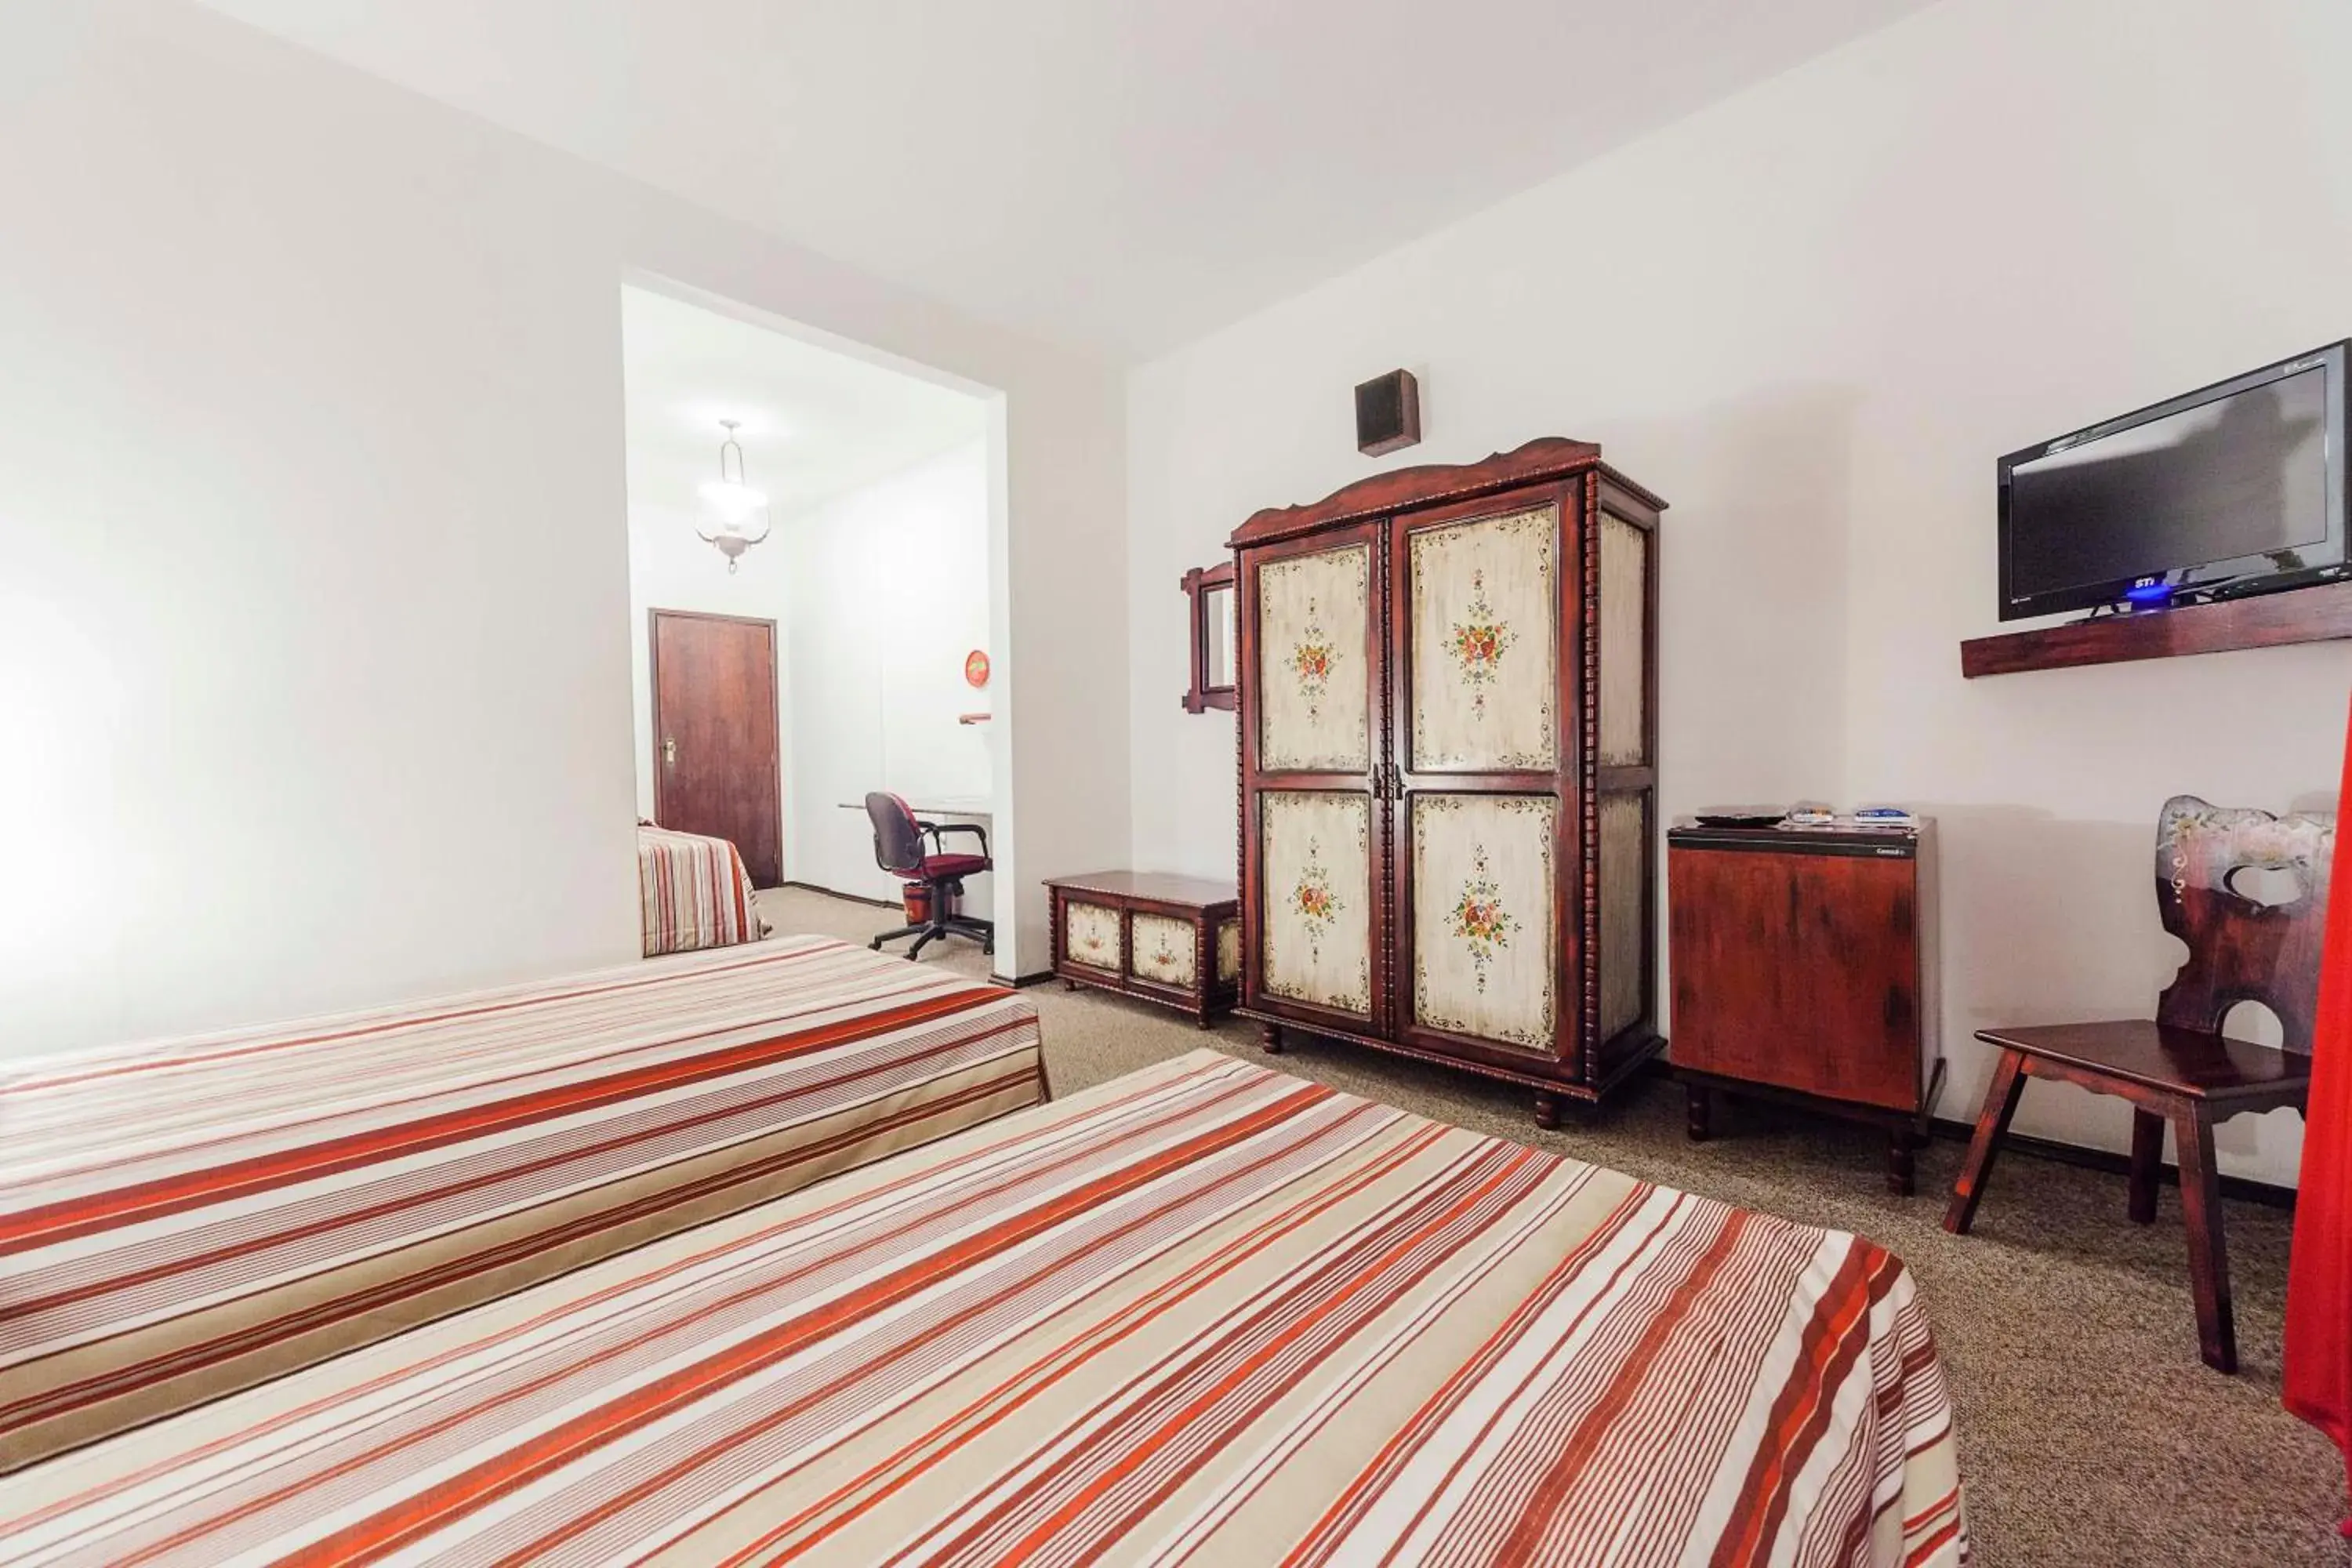 Bedroom in Hotel Tannenhof